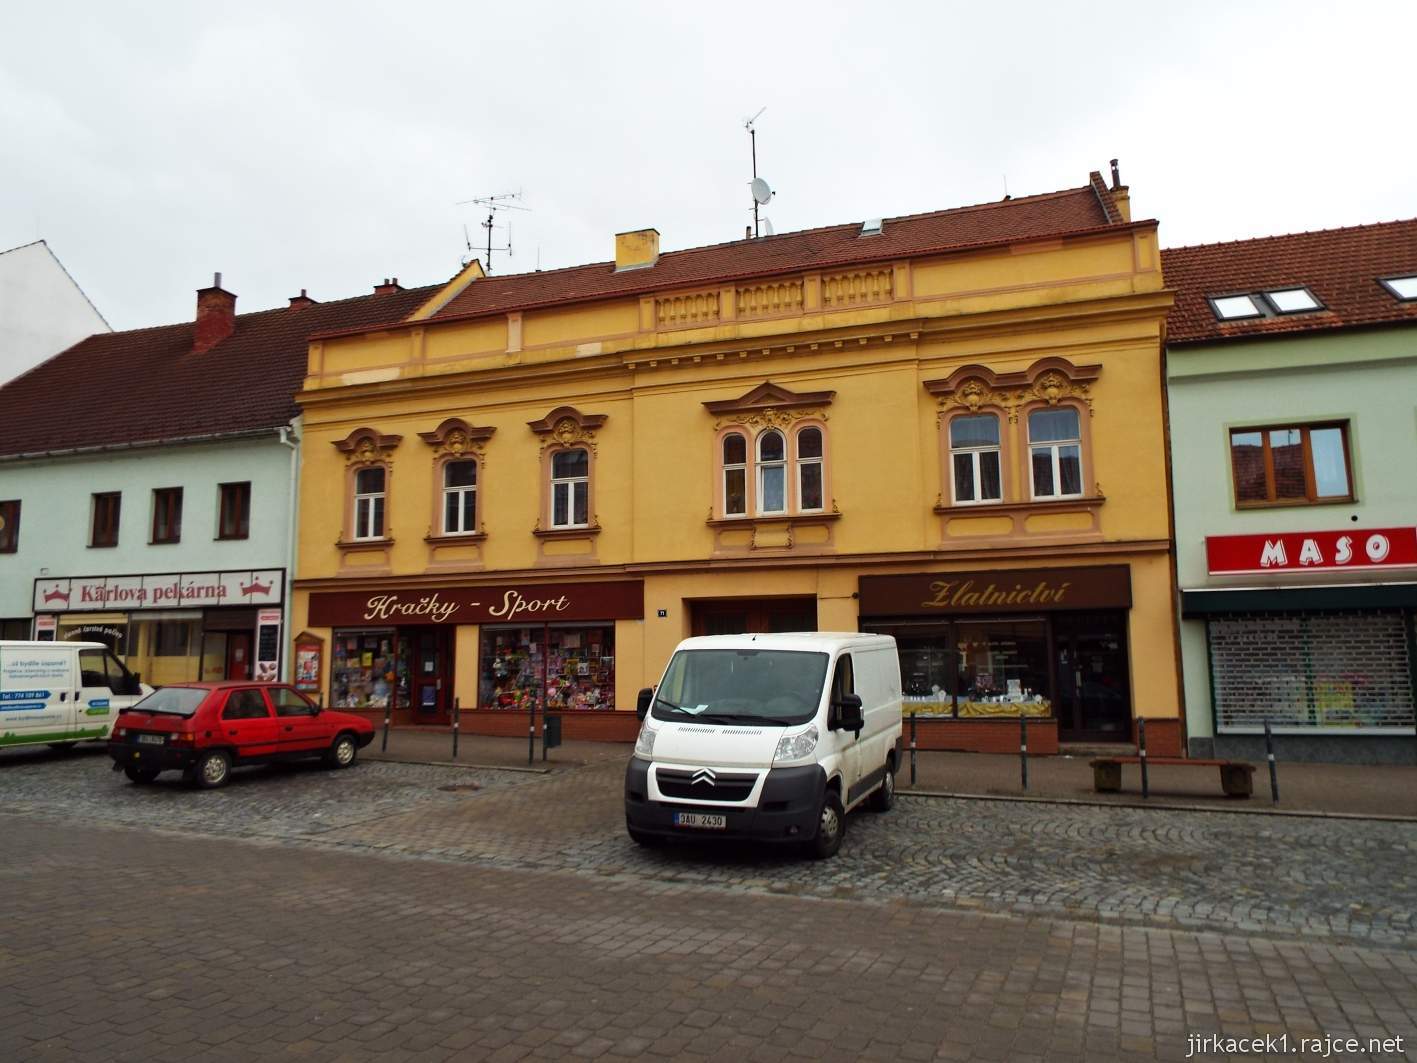 Slavkov u Brna - Palackého náměstí - žlutý dům číslo 71 s prodejnou hraček a zlatnictvím - dům Jana Andrly